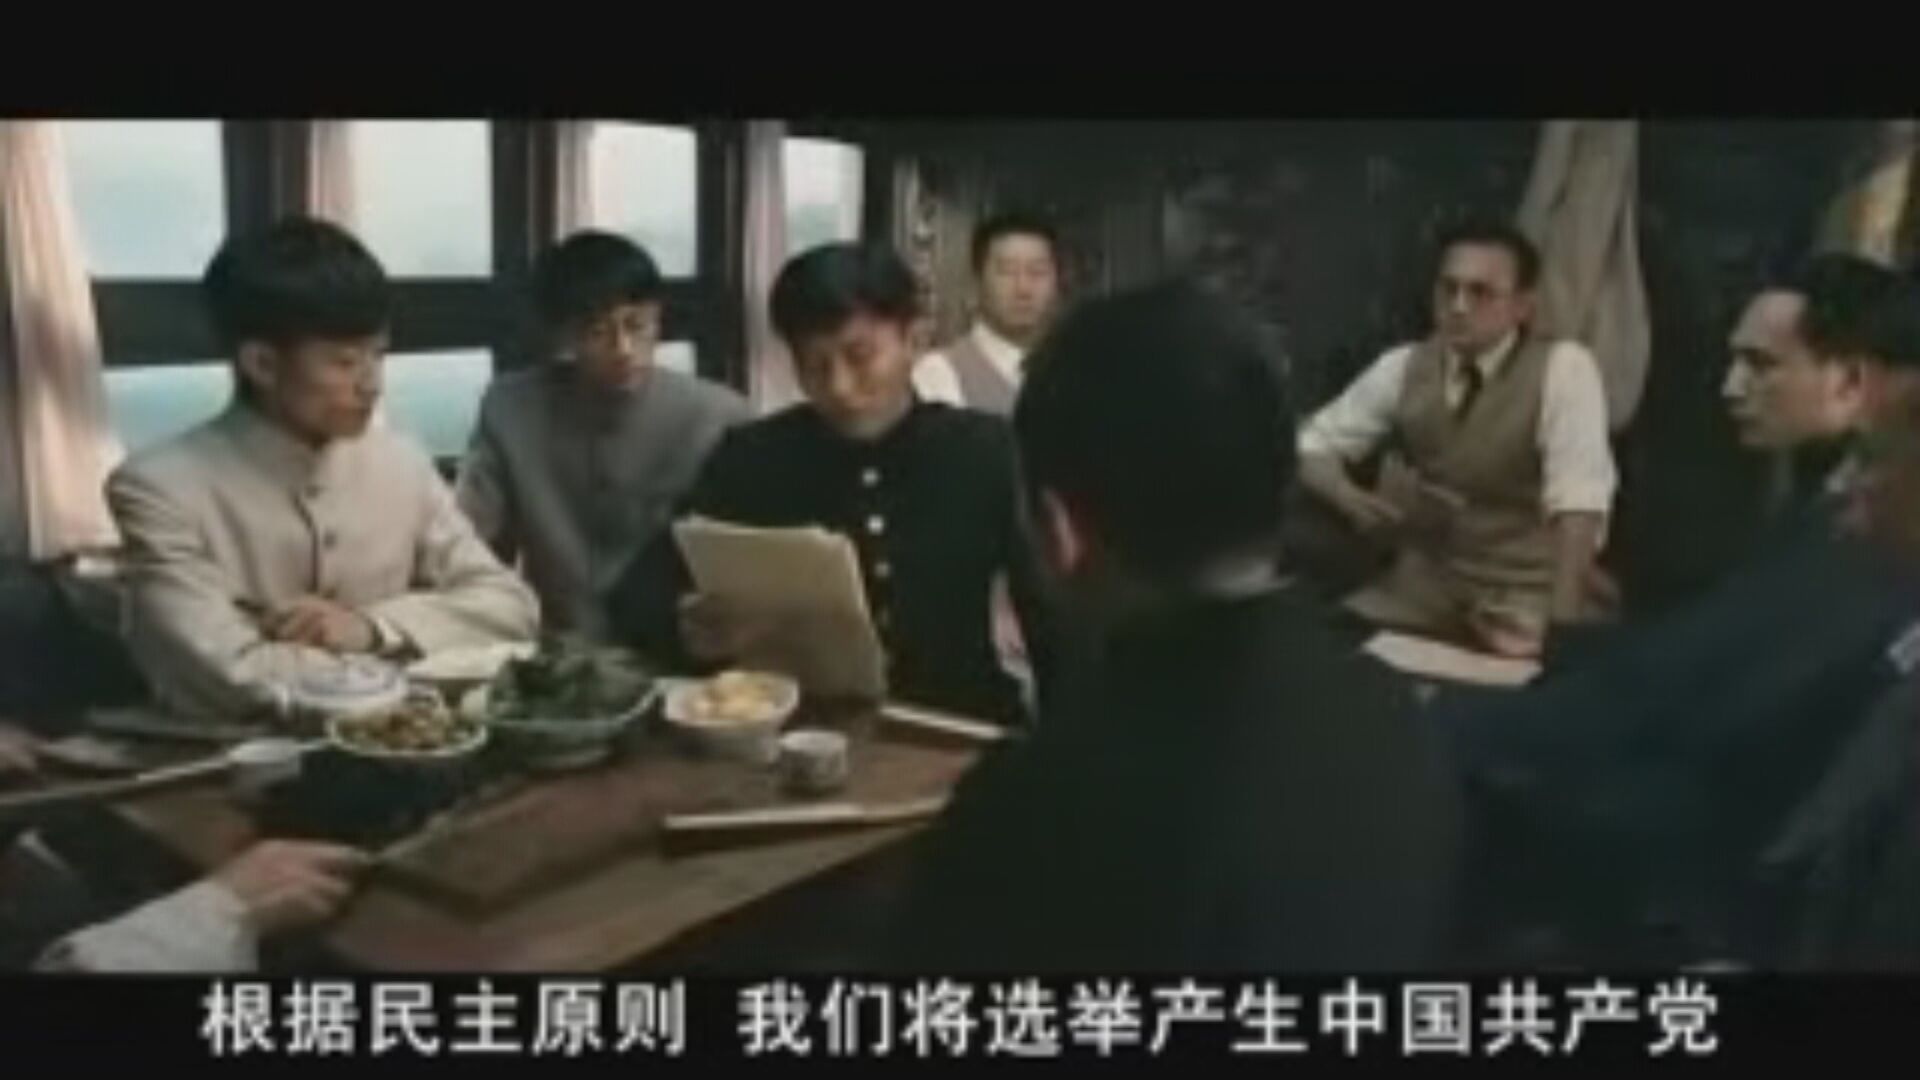 【初心璀璨】——《不忘初心 经典故事》七一特辑 同唱《国际歌》 中国共产党诞生于南湖红船